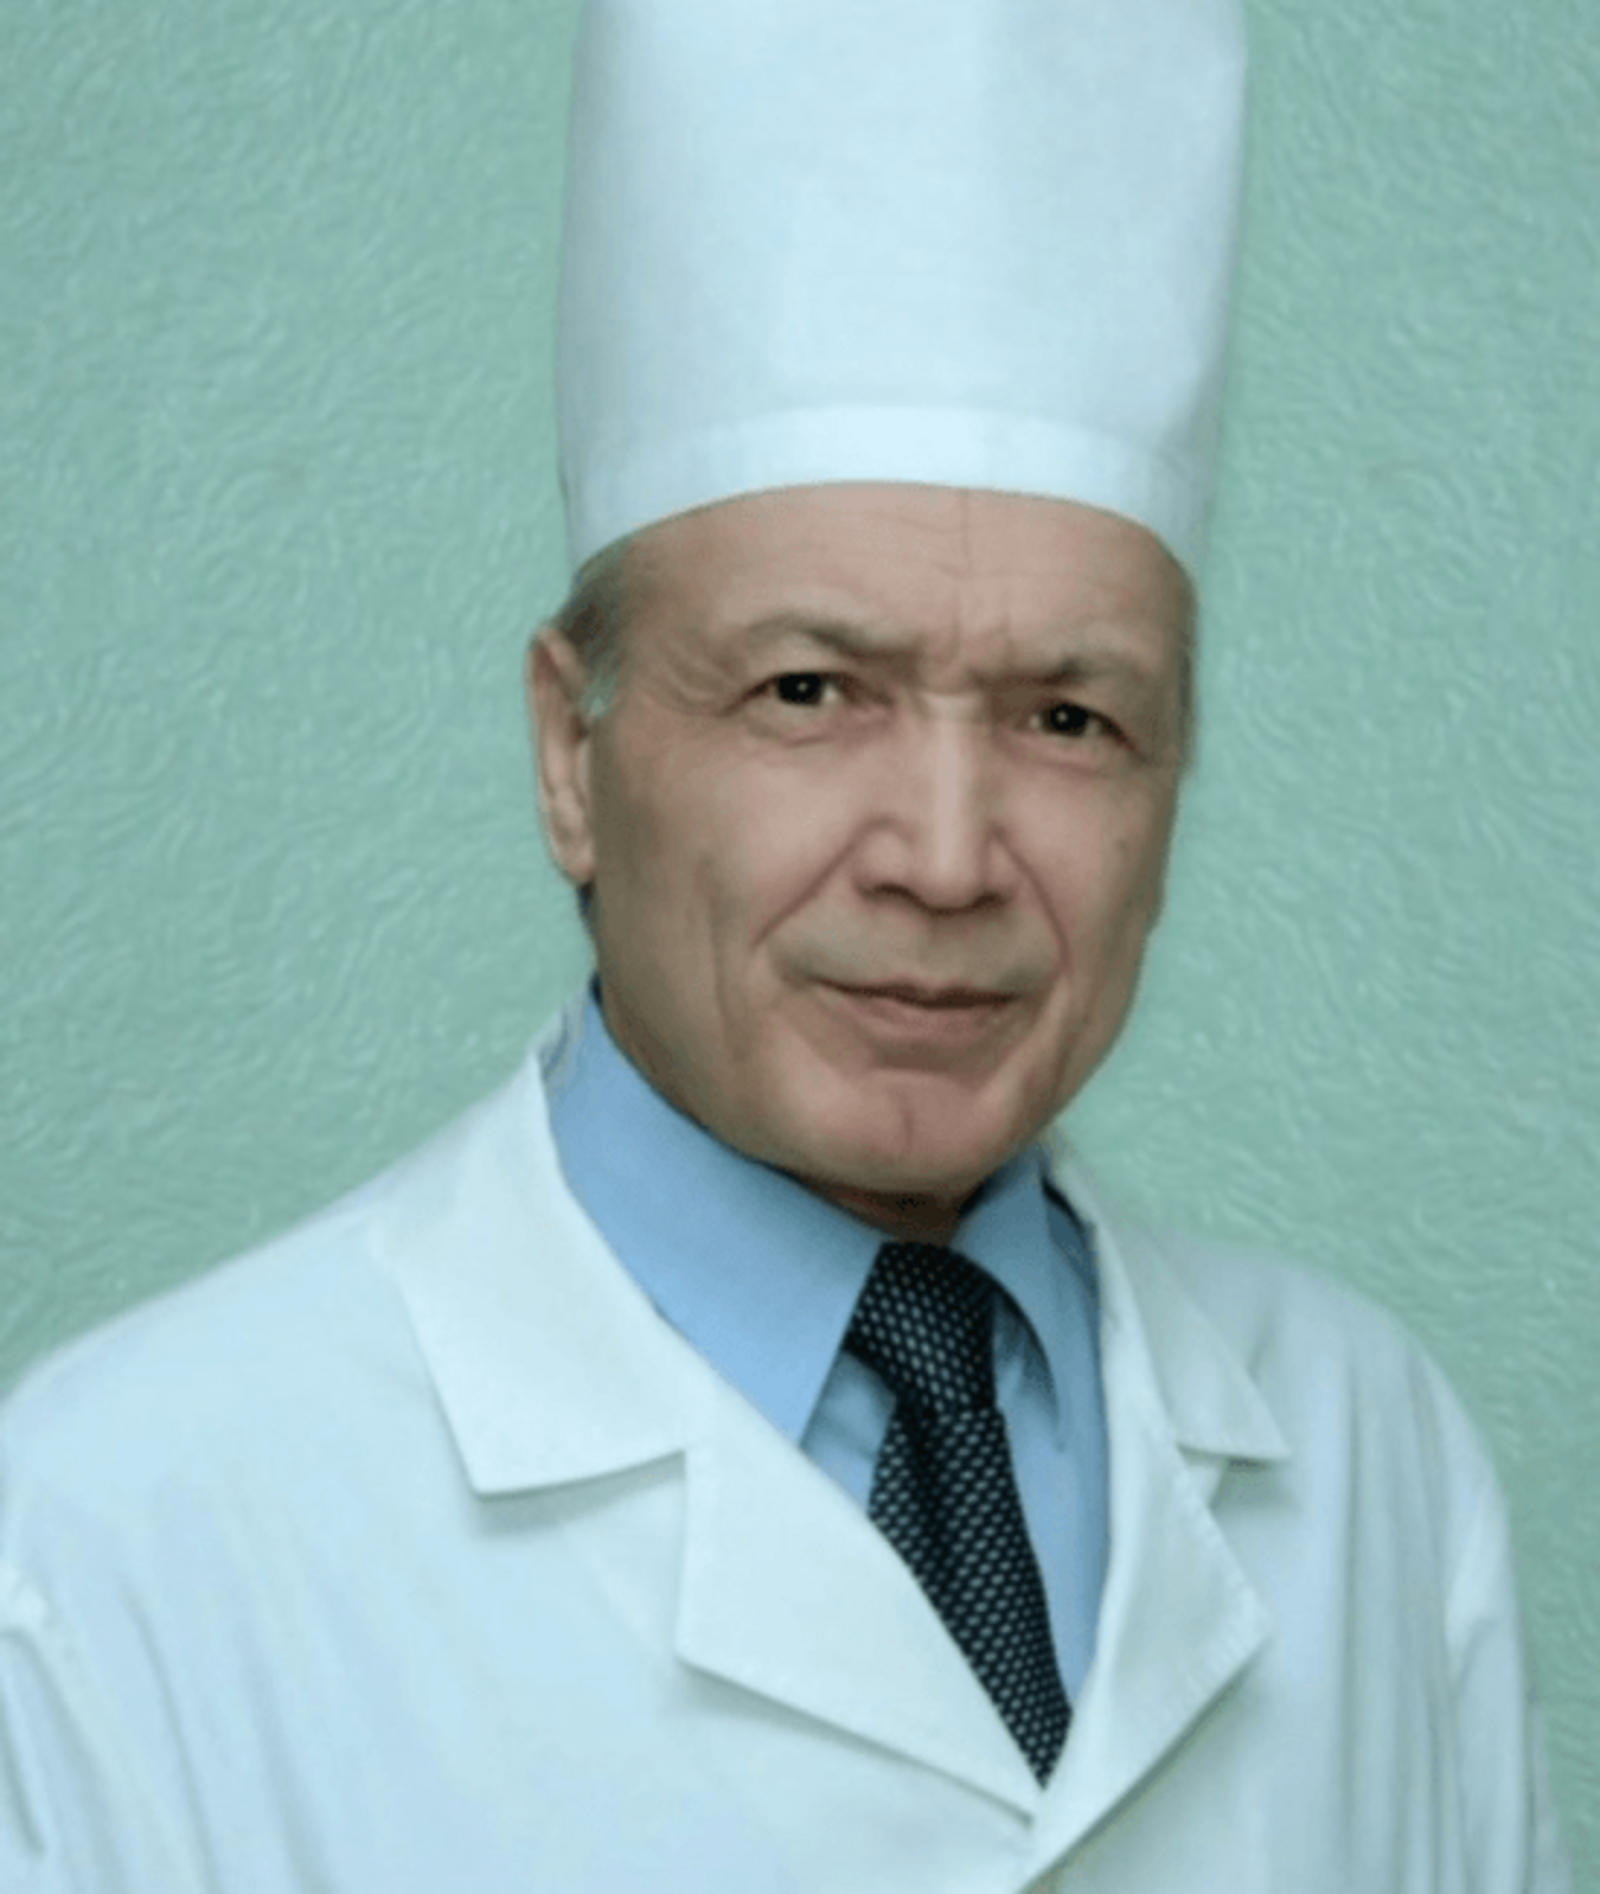 Сегодня свой 70-летний юбилей отмечает президент республиканской Ассоциации хирургов Виль Мамилович Тимербулатов